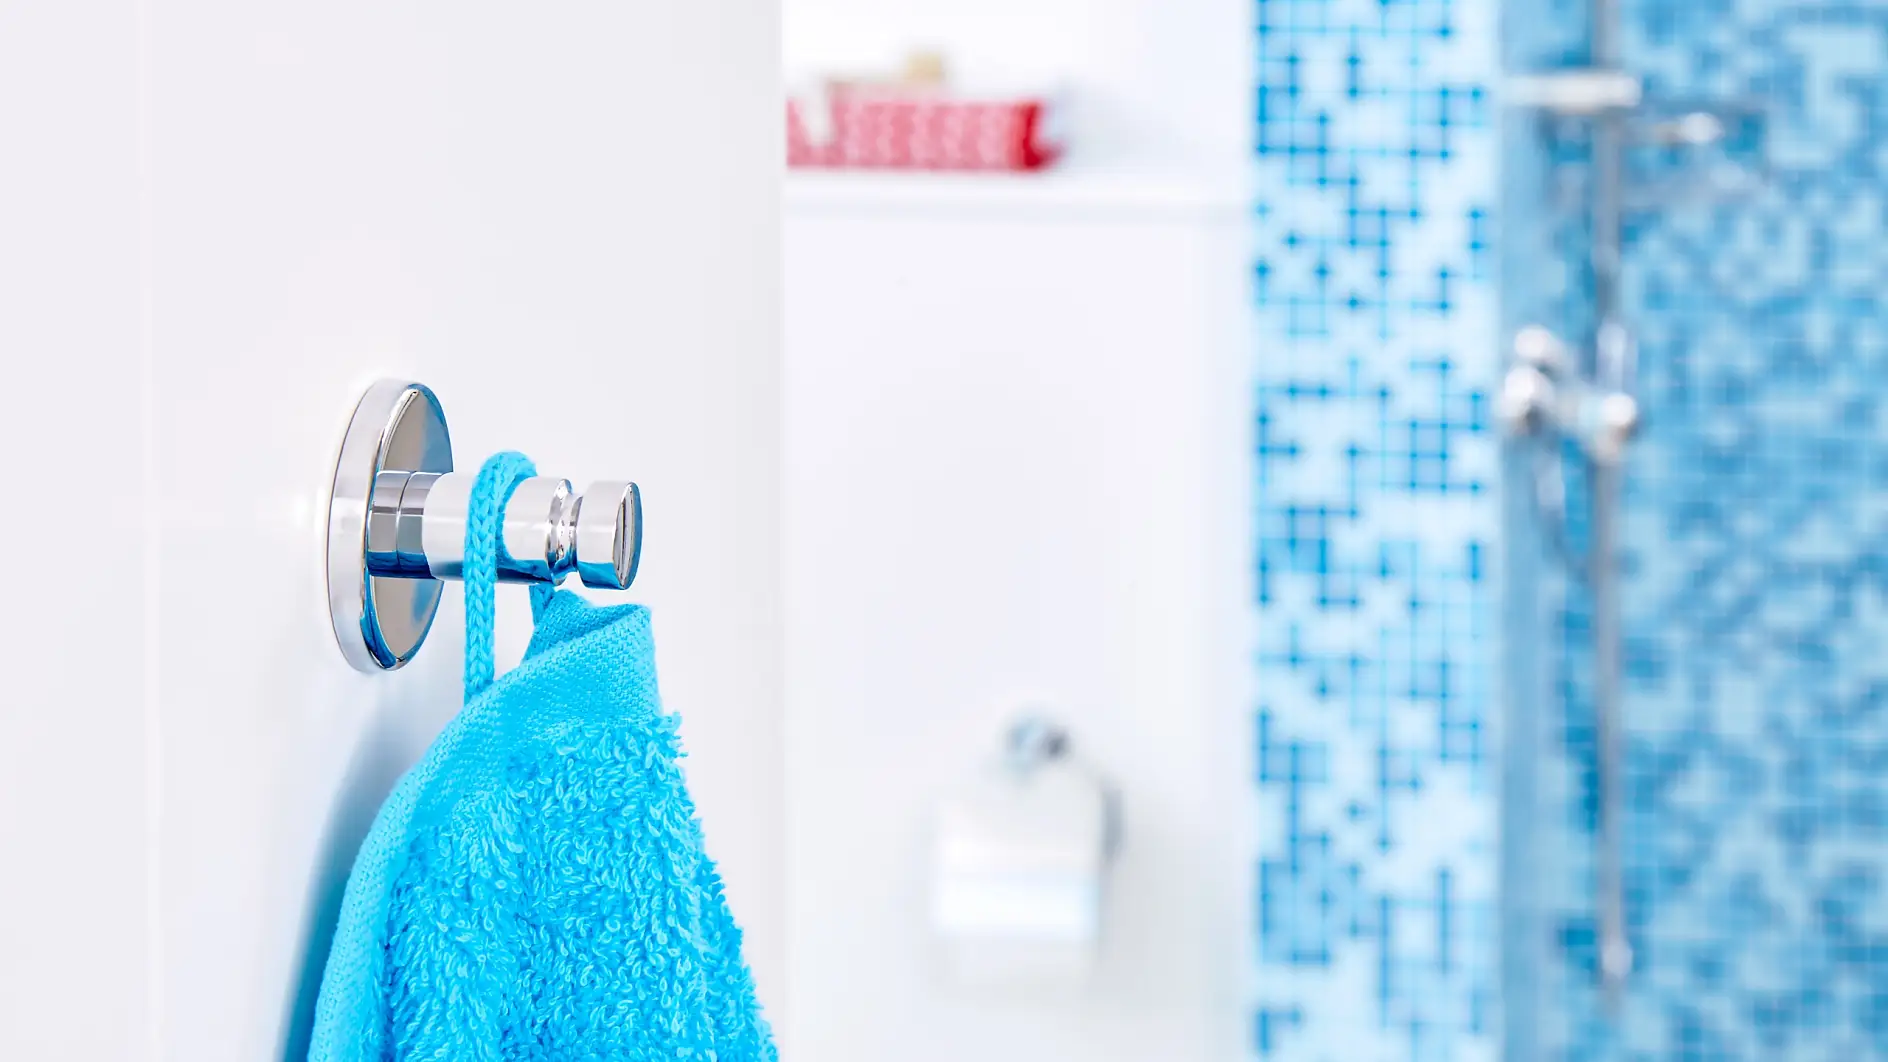 Elke handdoek heeft een haak nodig om dicht bij de plek waar hij wordt gebruikt te zijn. Vind de haak die bij de stijl van jouw badkamer past.